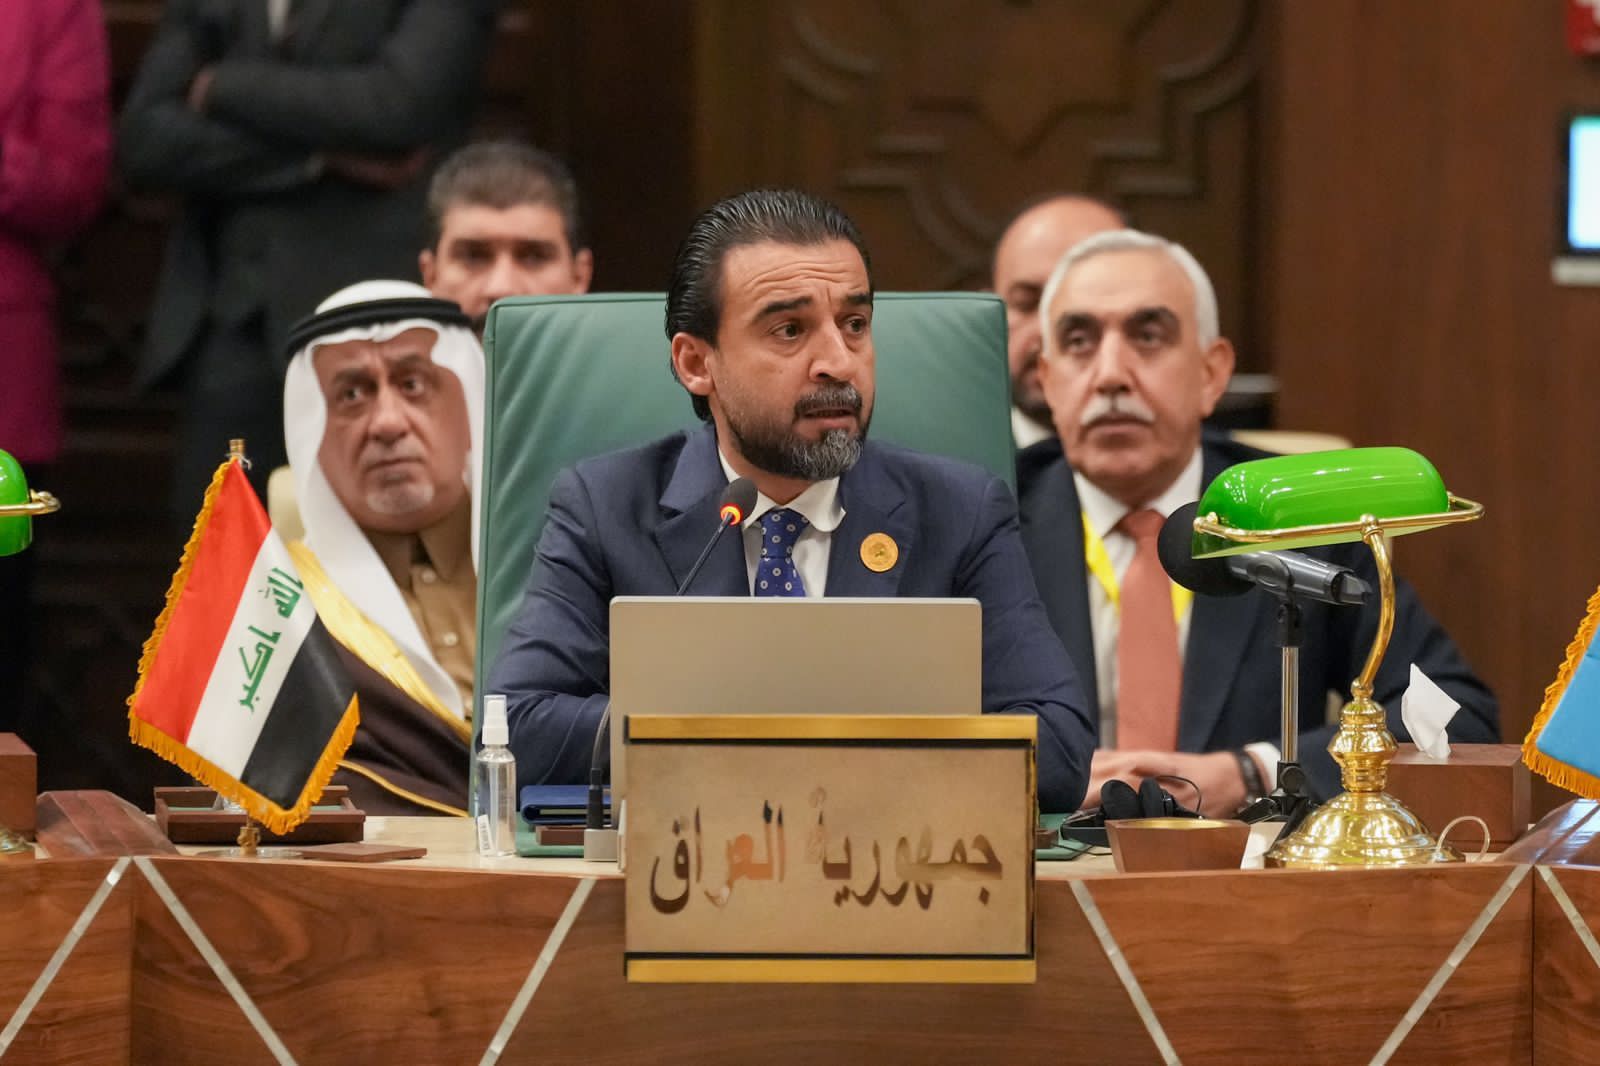 العراق يدعو البرلمانات العربية للعمل على عودة سوريا لمحيطها و لاستقرارها